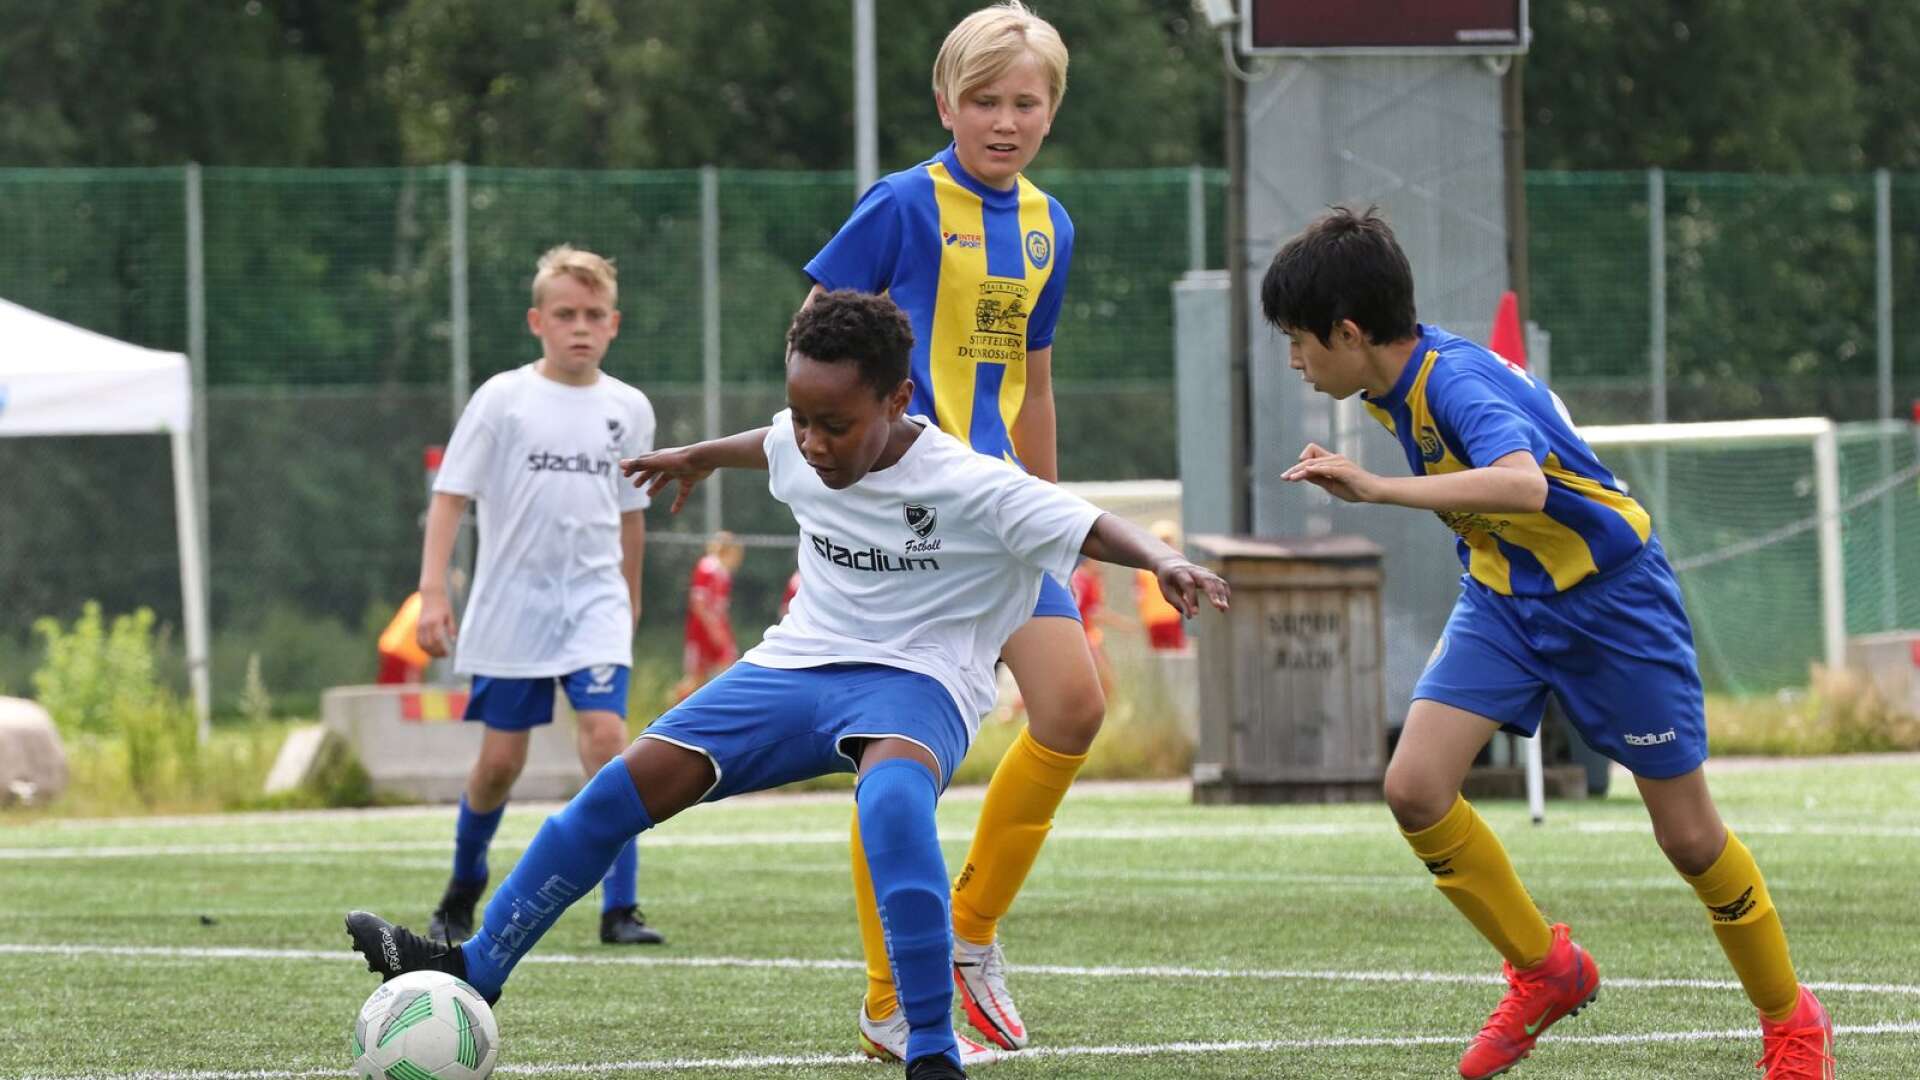 IFK Skövde 4 sparkade i gång Skadevi cup mot Kullaviks IF på fredagen.